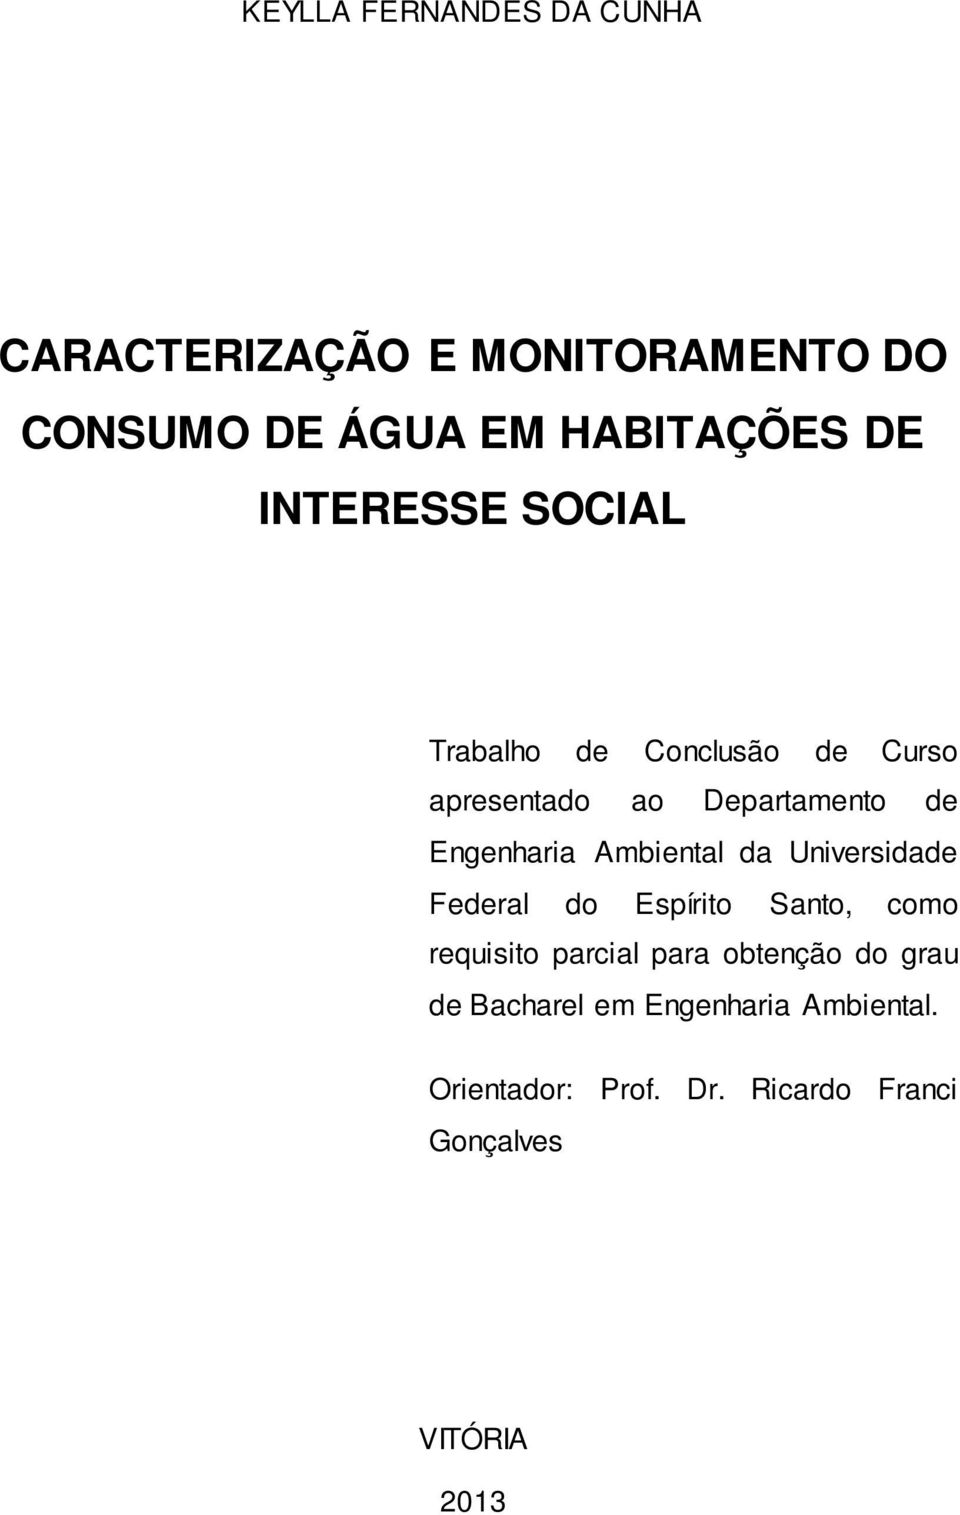 Ambiental da Universidade Federal do Espírito Santo, como requisito parcial para obtenção do